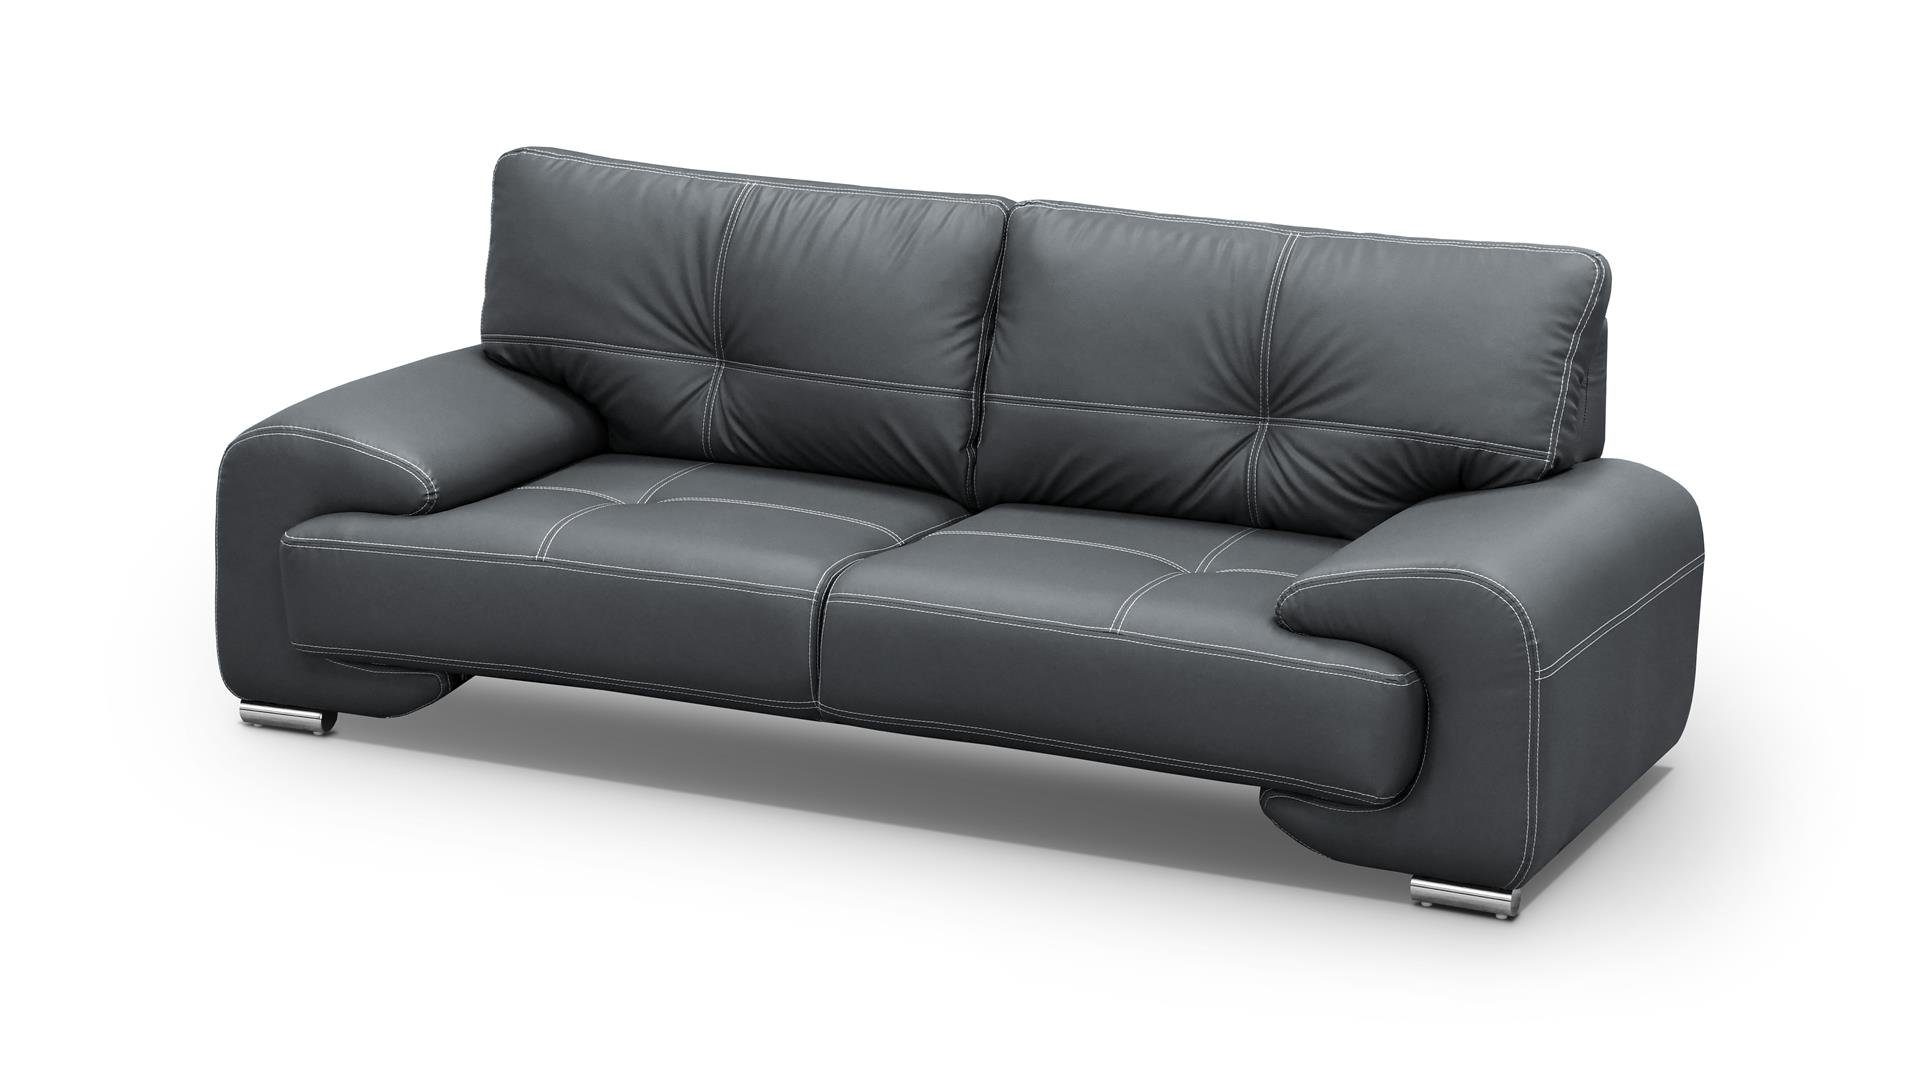 Beautysofa Sofa Dreisitzer Sofa Couch OMEGA Neu Anthrazit (dolaro 40)